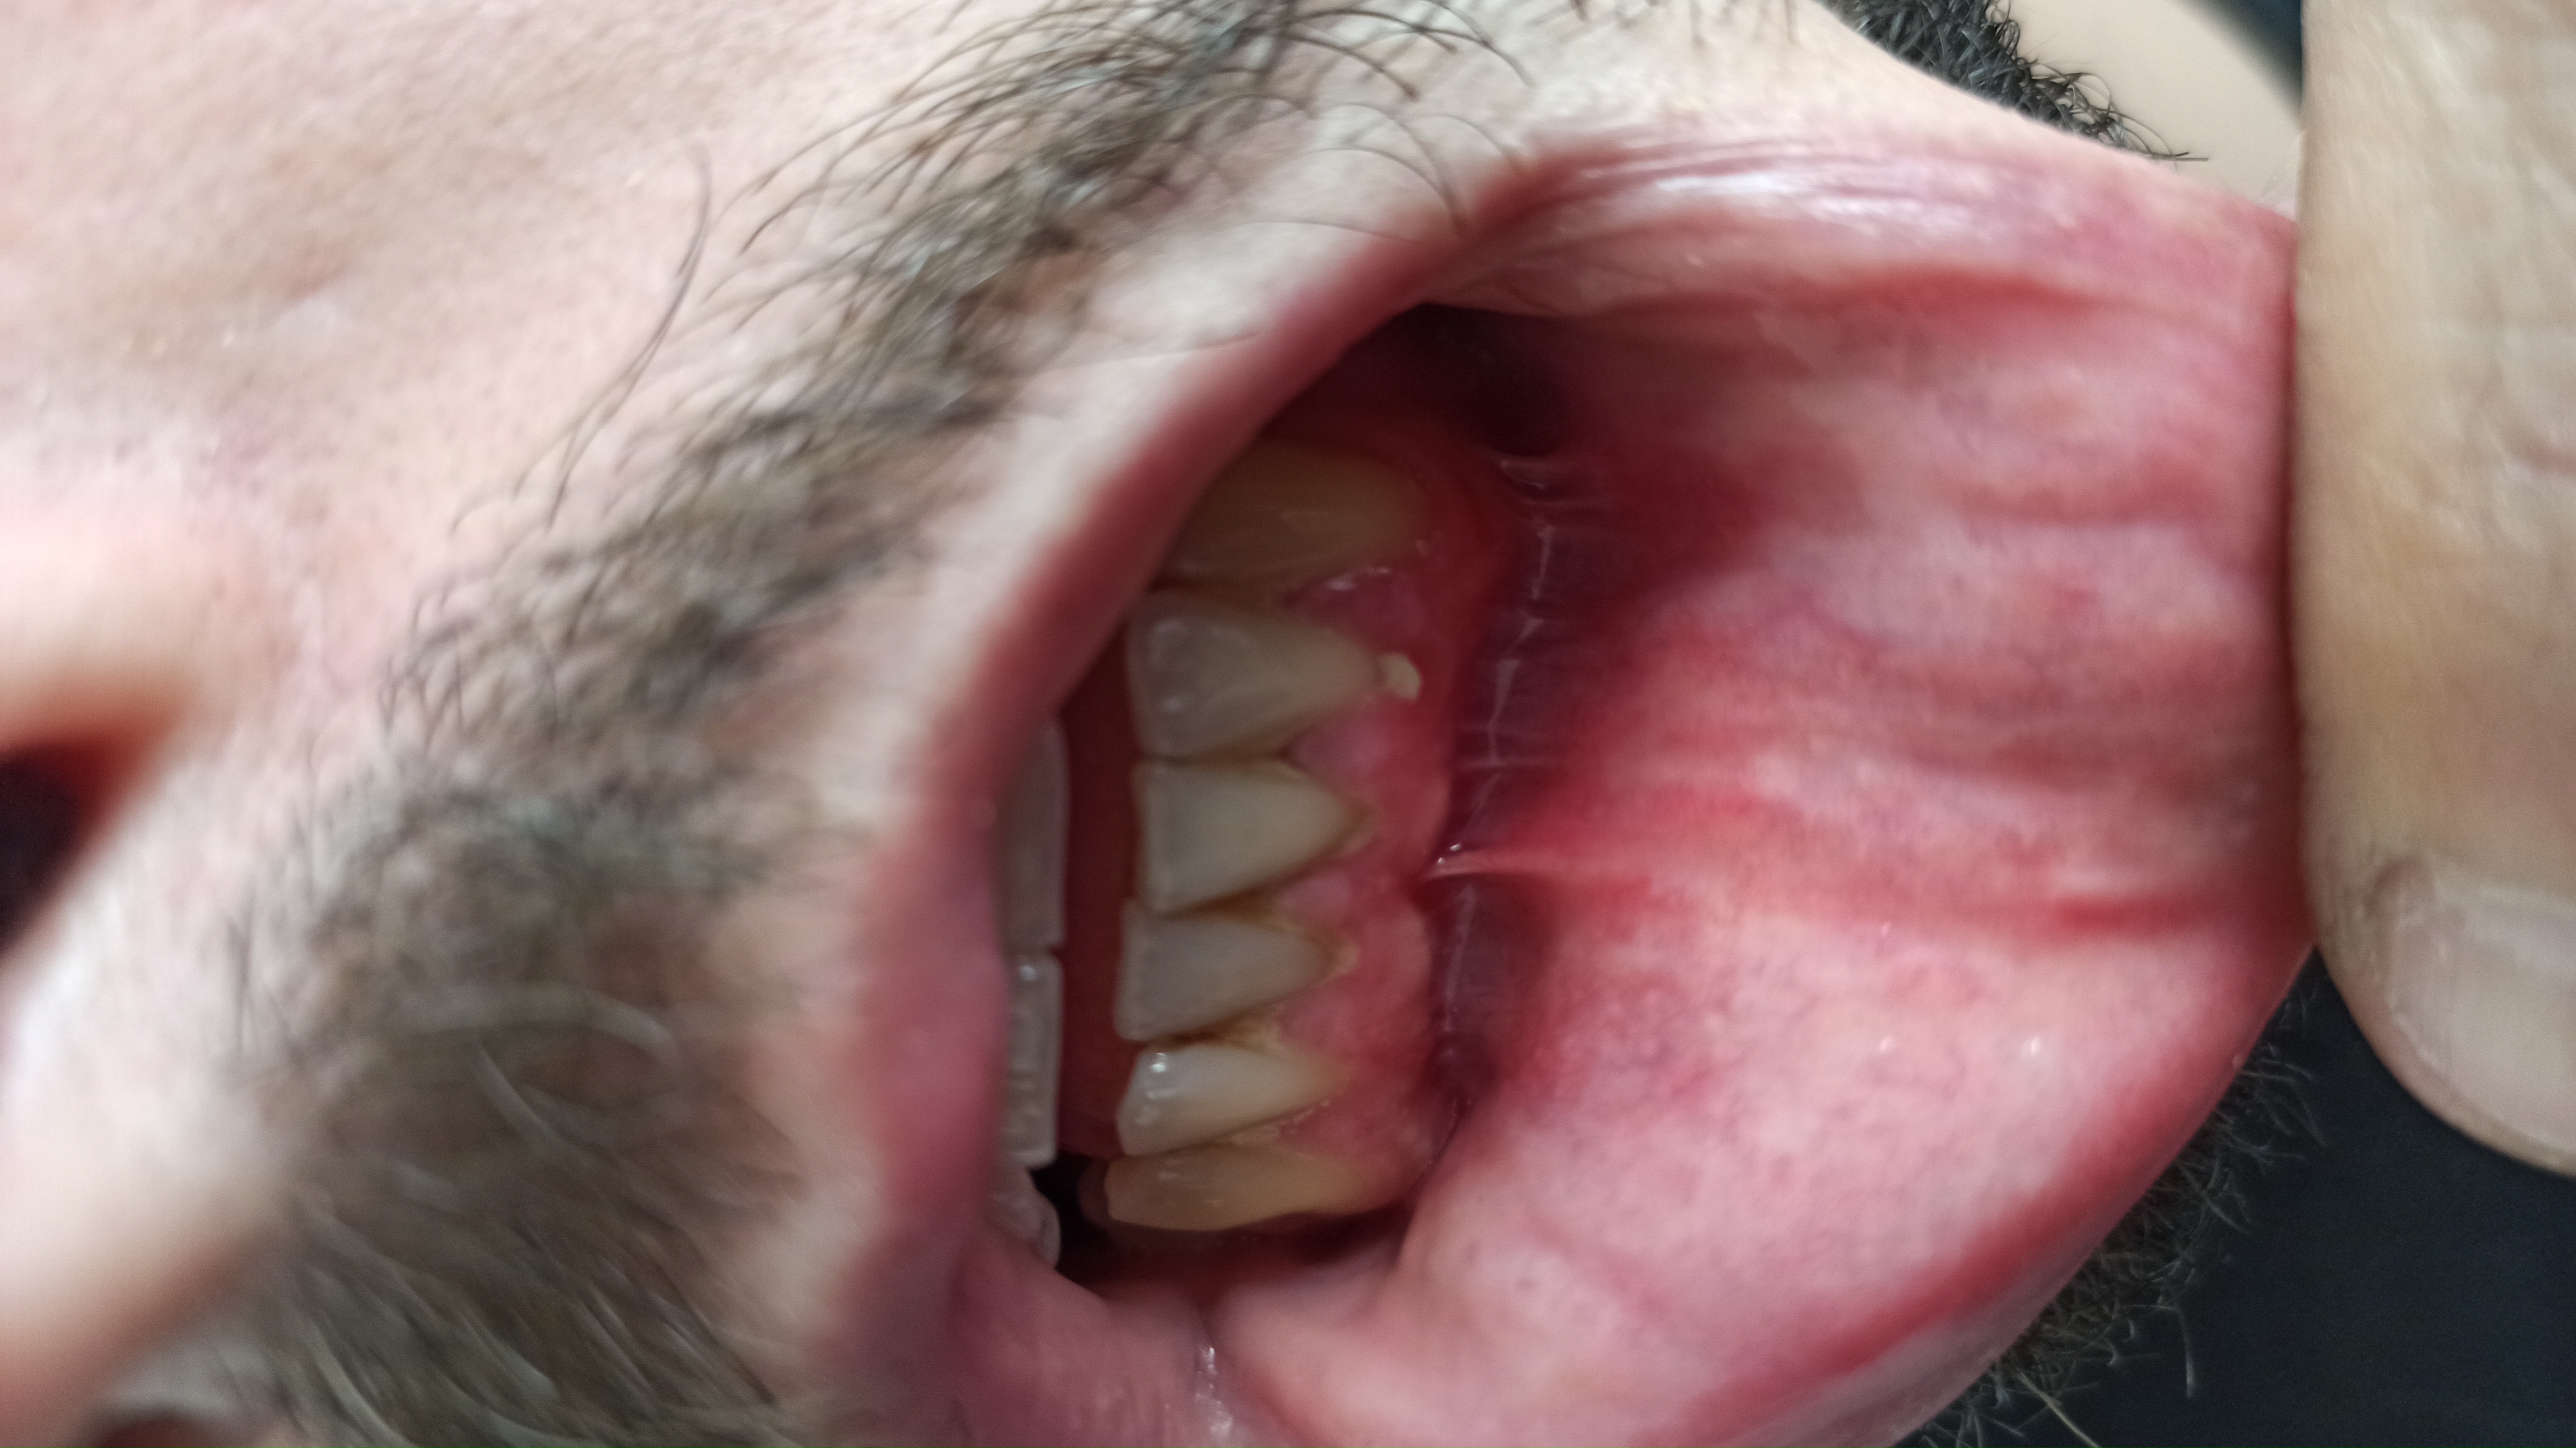 Nella gengiva sotto al dente, è apparso un pezzo bianco